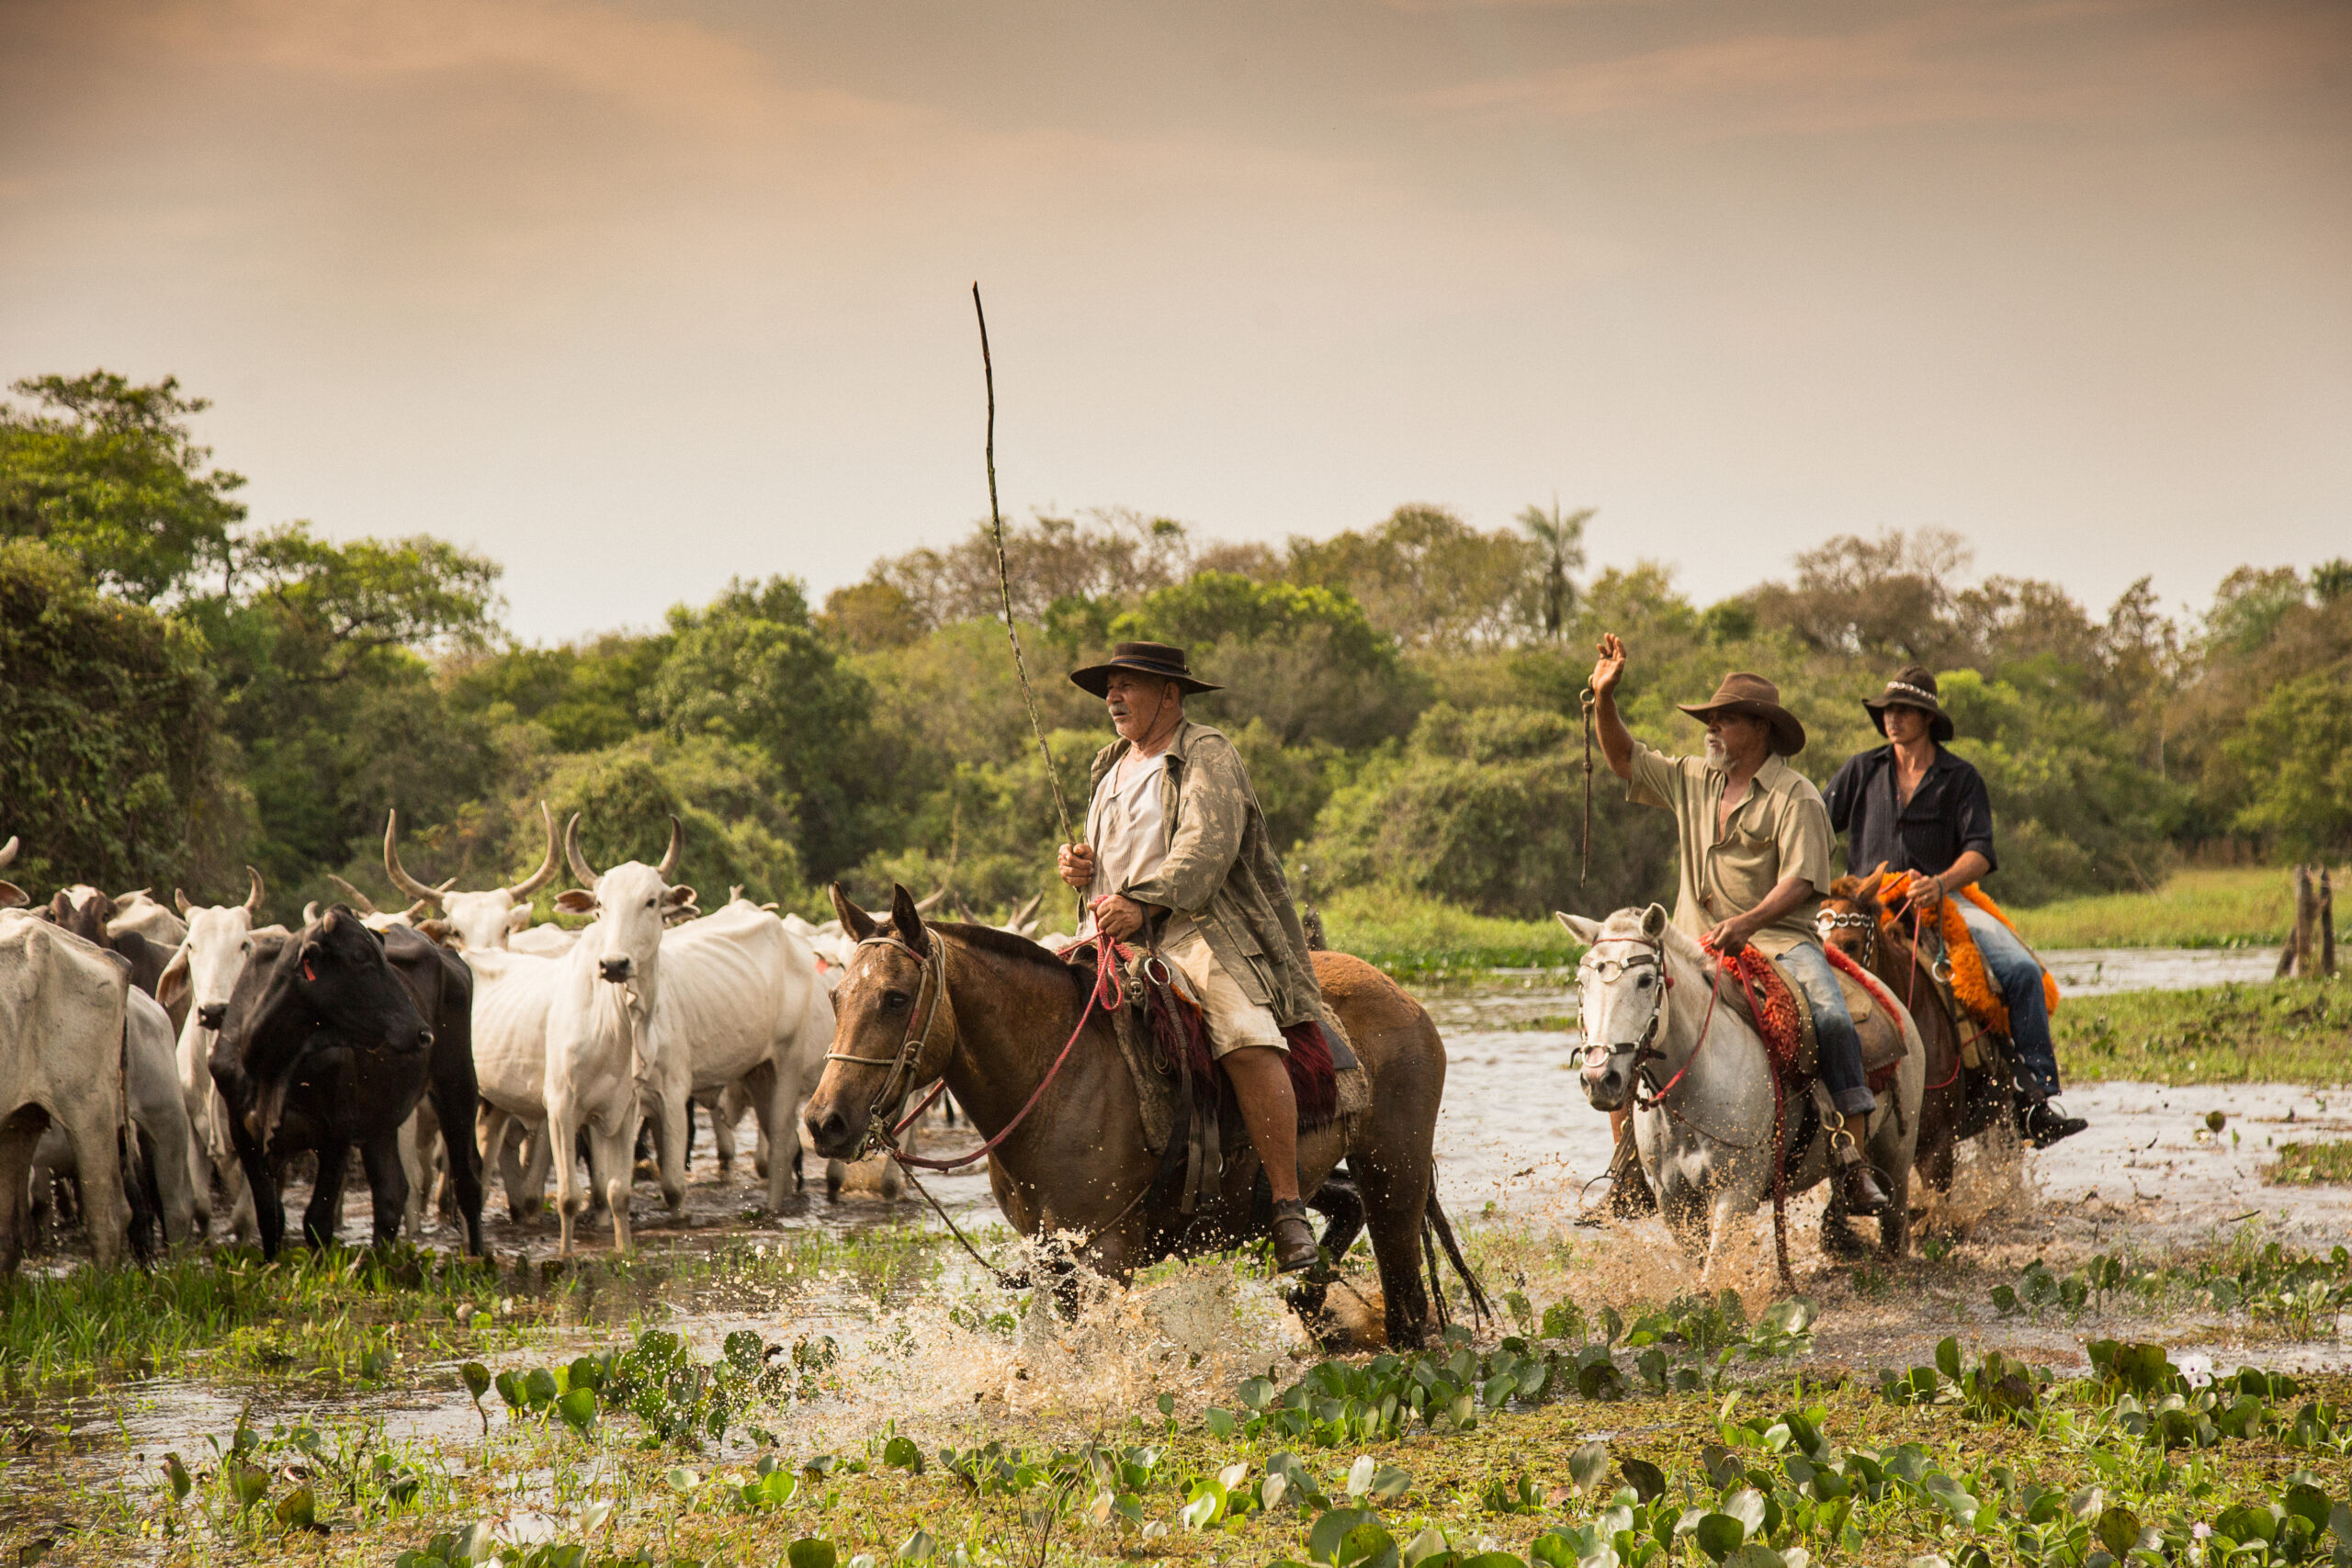 Cavalo Pantaneiro - Raça se adaptou ao Pantanal - MS Por Favor